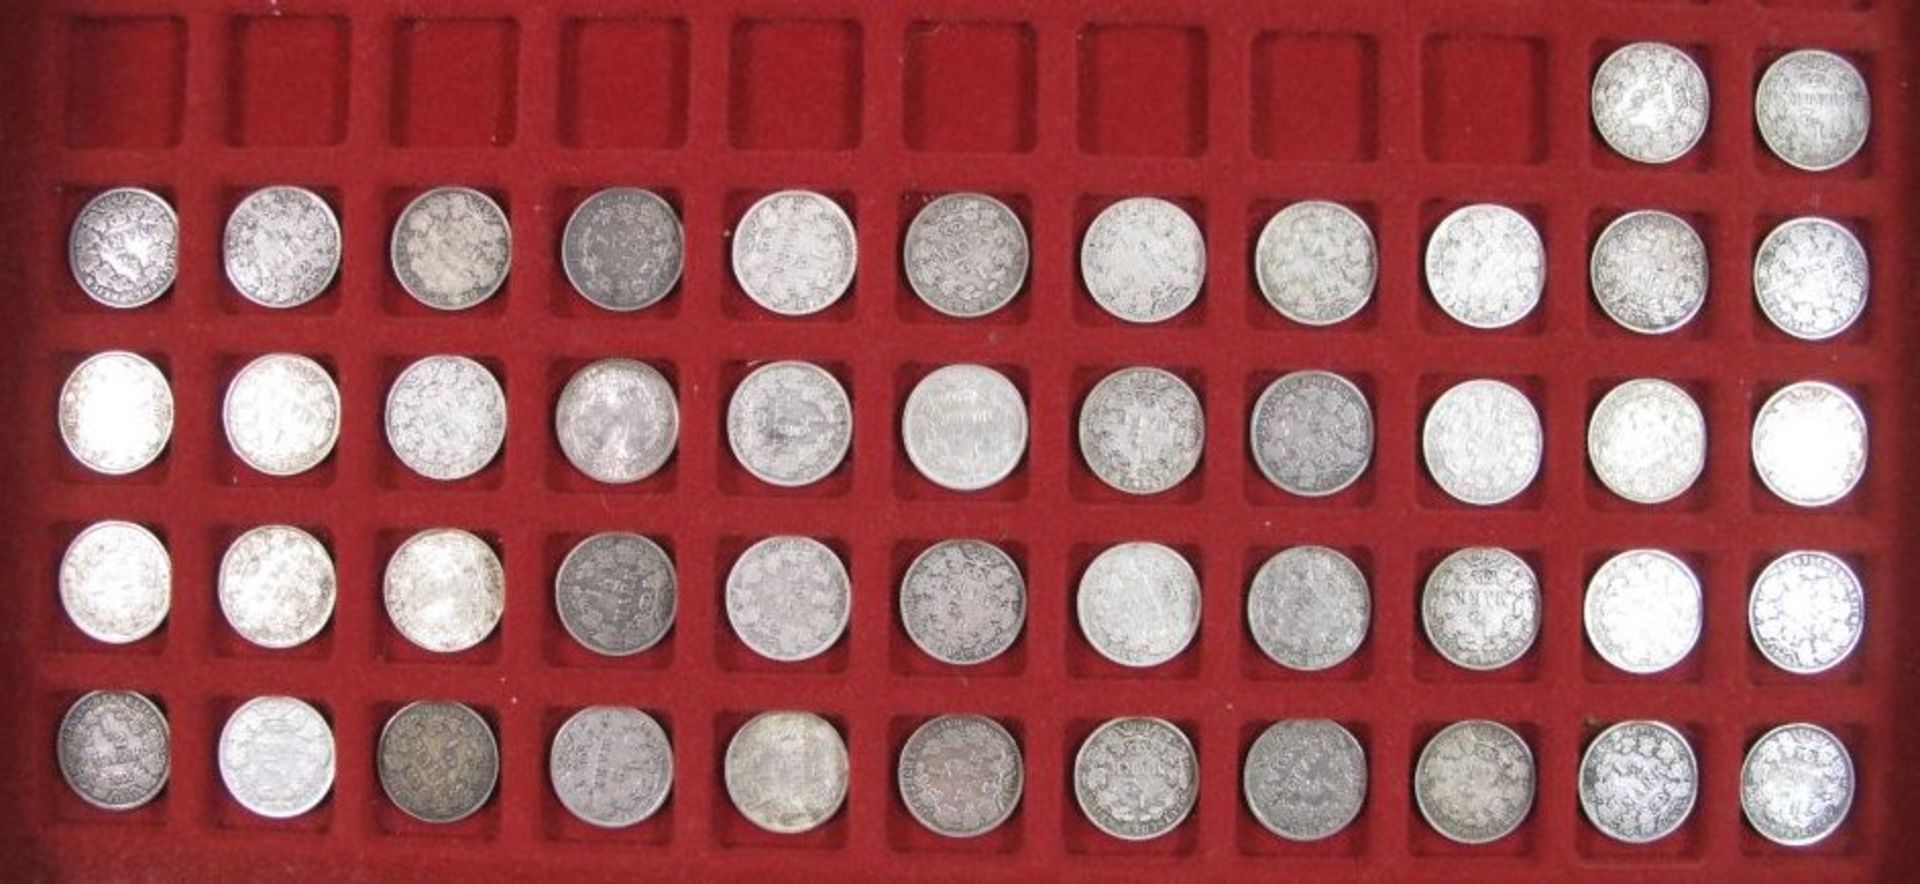 Konvolut div. Münzen in Koffer, Deutsches Reich, Silber. - Bild 6 aus 6